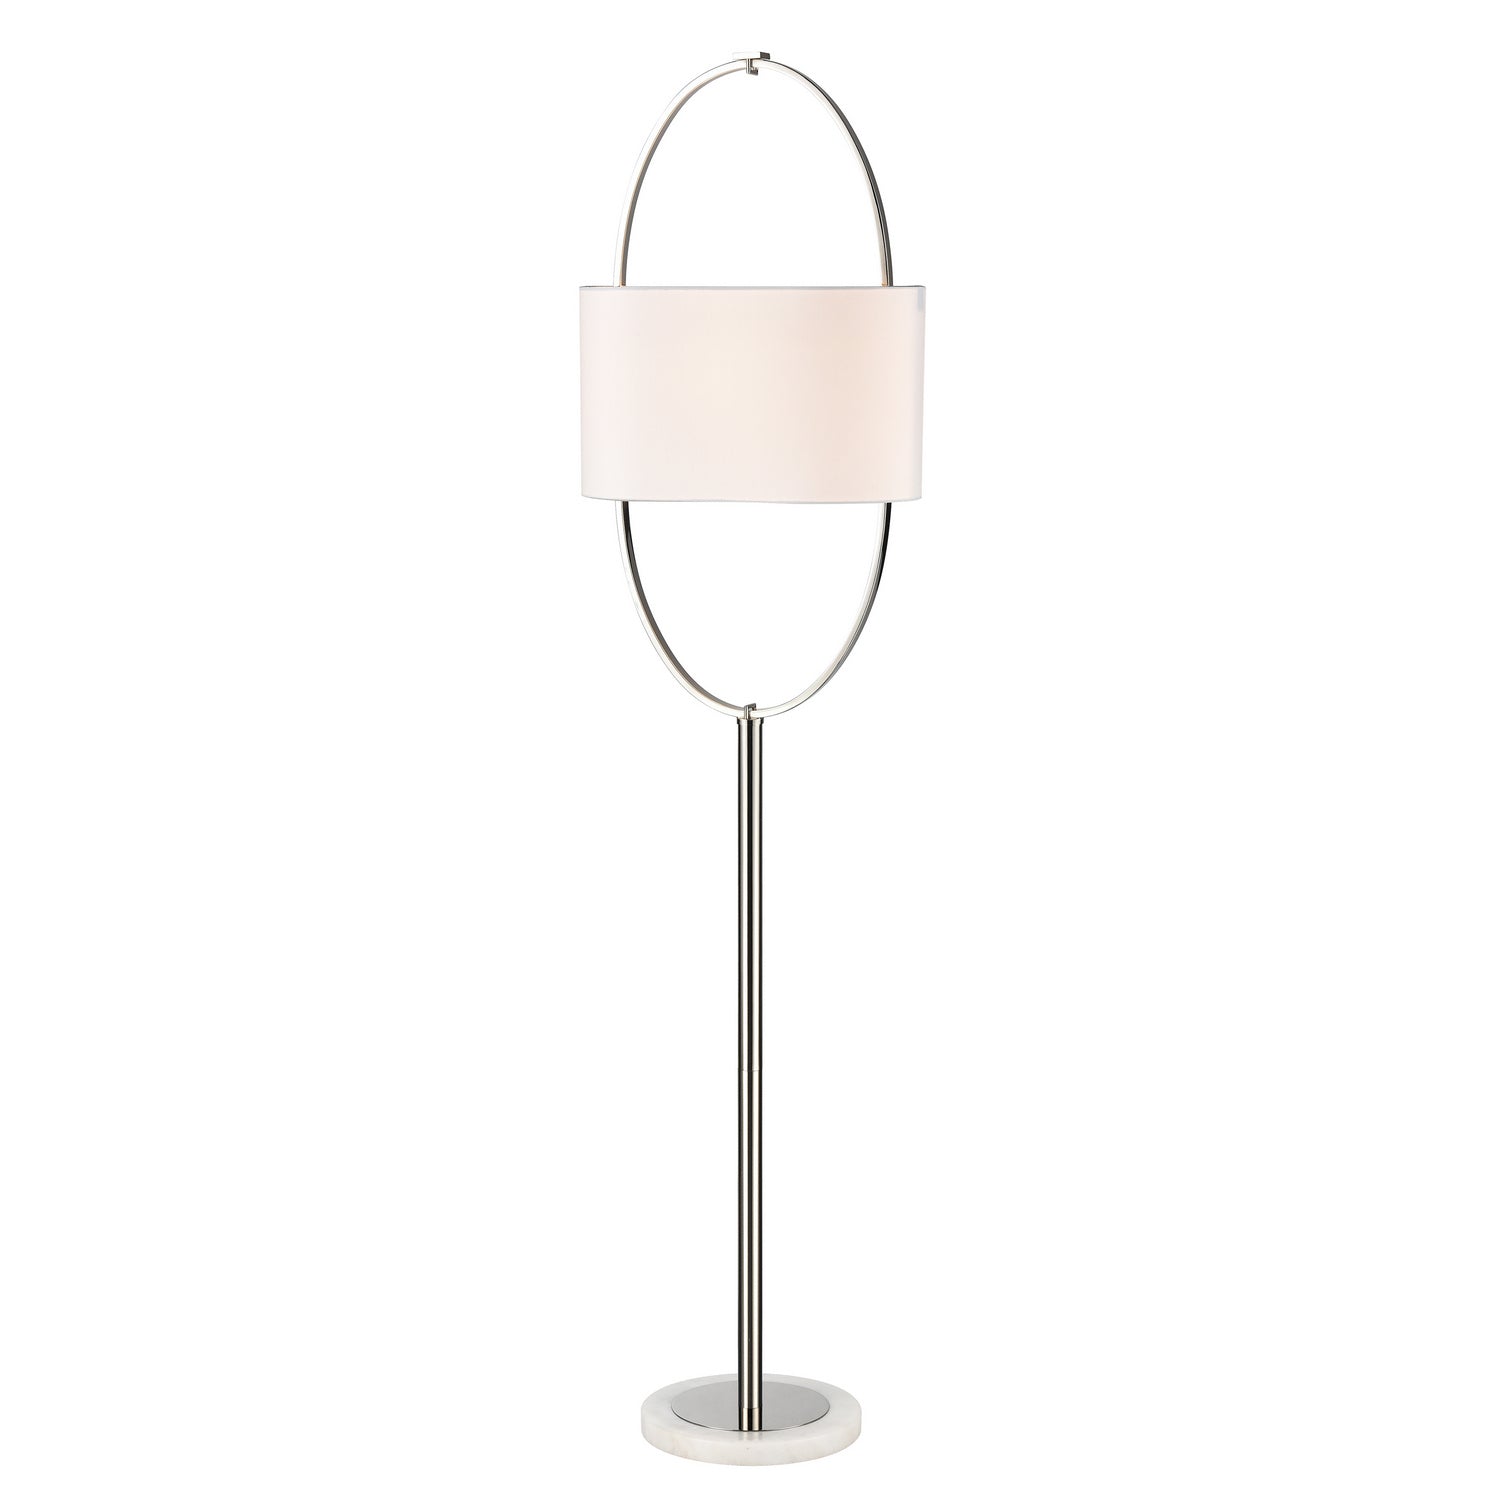 ELK Home - H0019-9572 - One Light Floor Lamp - Gosforth - Polished Nickel